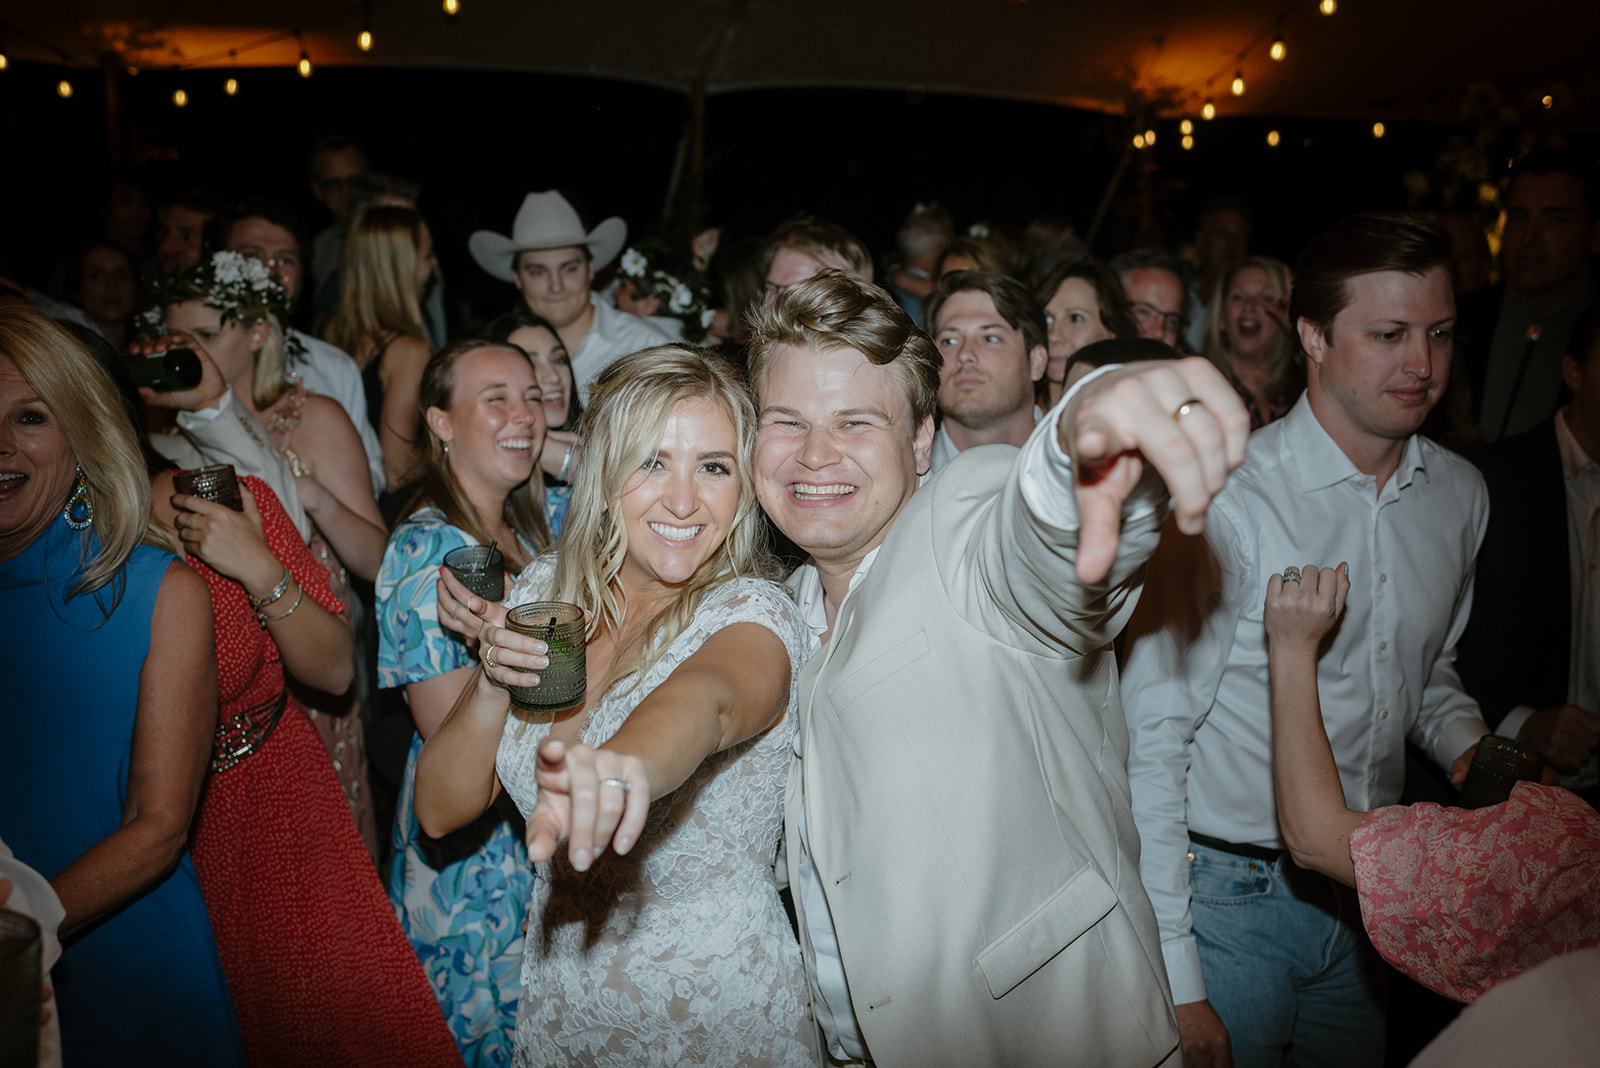 Wedding dancing photos Texas